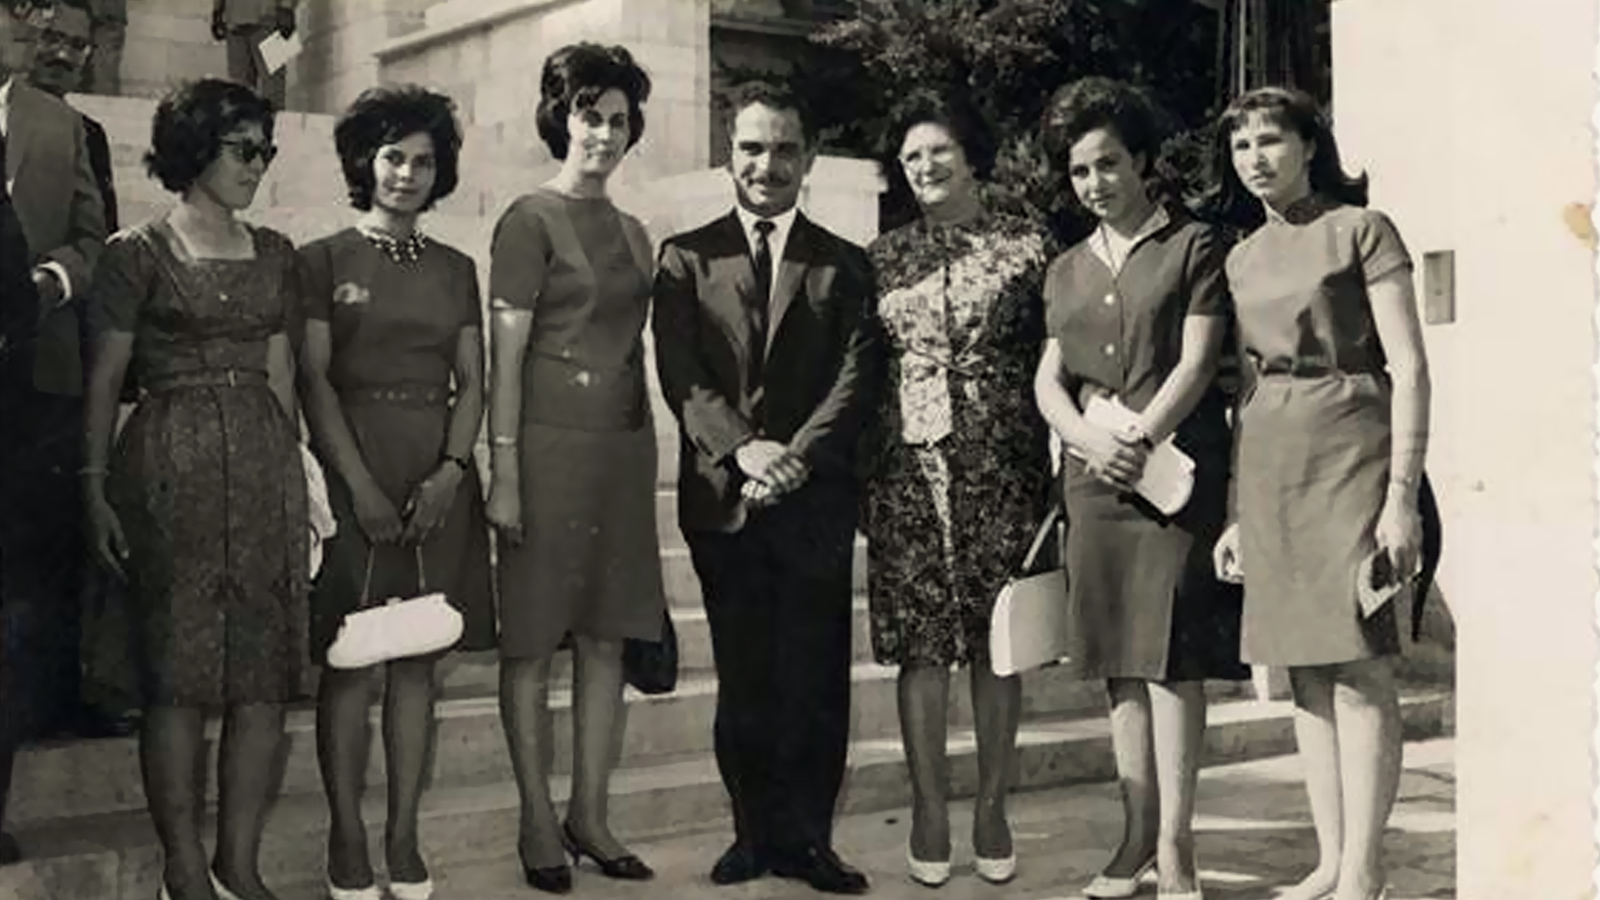 ‪صورة تعود إلى عام 1966 تضم الملك الحسين ملك الأردن مع ثلاث طالبات من مدرسة بنات رام الله الثانوية (‬ مواقع تواصل)